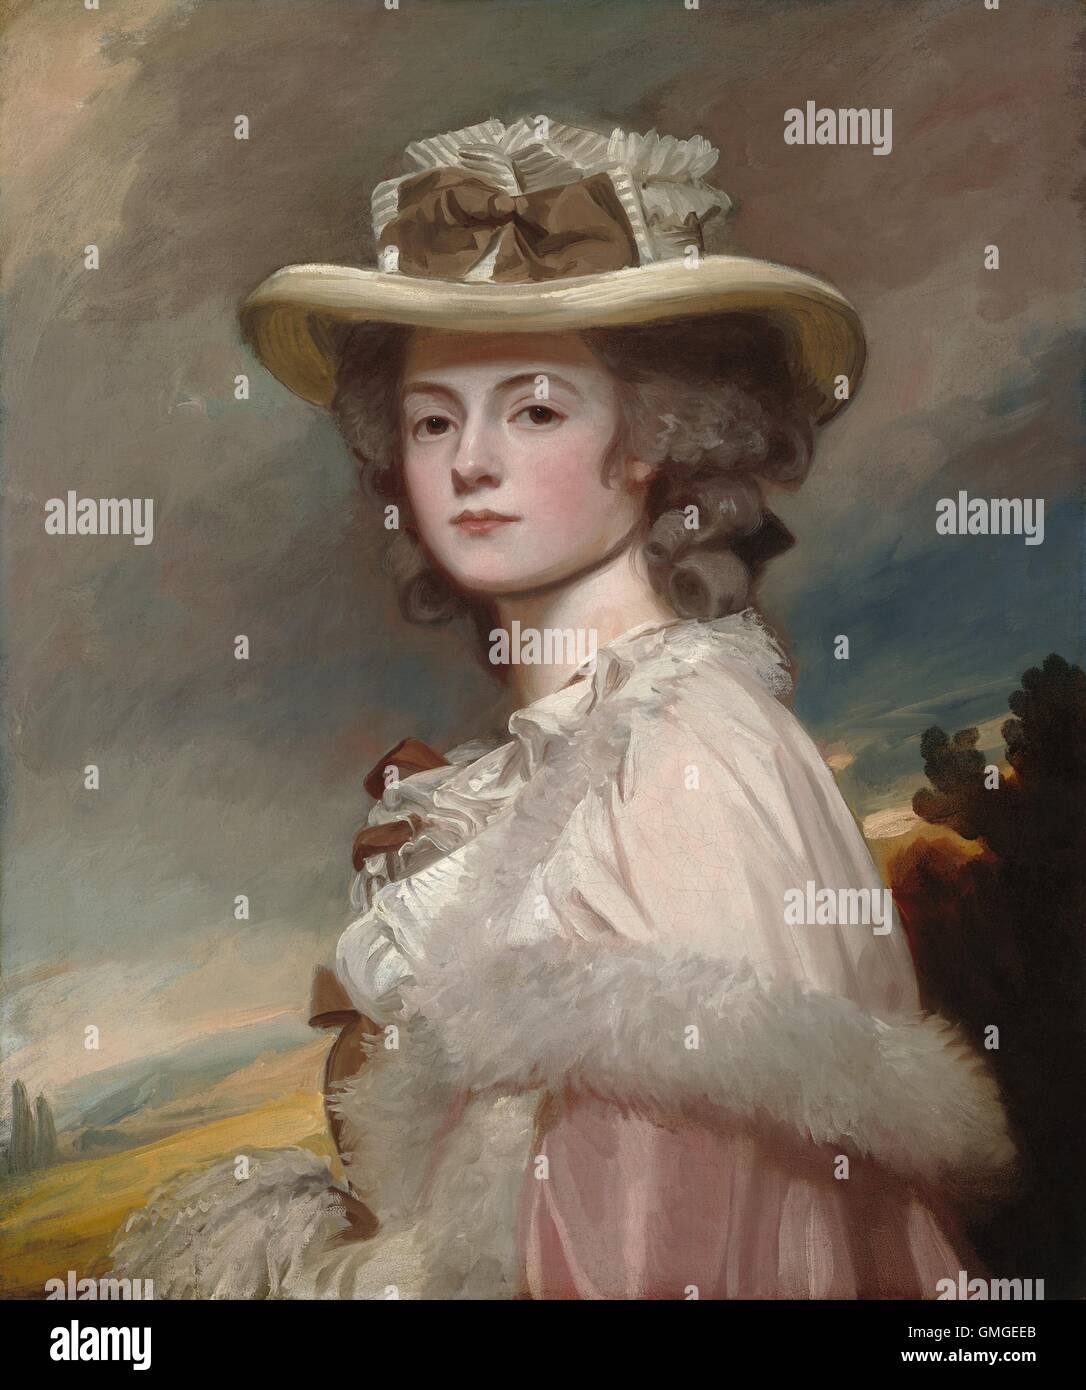 Mme Davies Davenport, par George Romney, 1782-84, de la peinture, huile sur toile. Romney a été un succès très prolifique et portraitiste de la société à Londres de 1776 à 1795 (BSLOC 2016 6 135) Banque D'Images